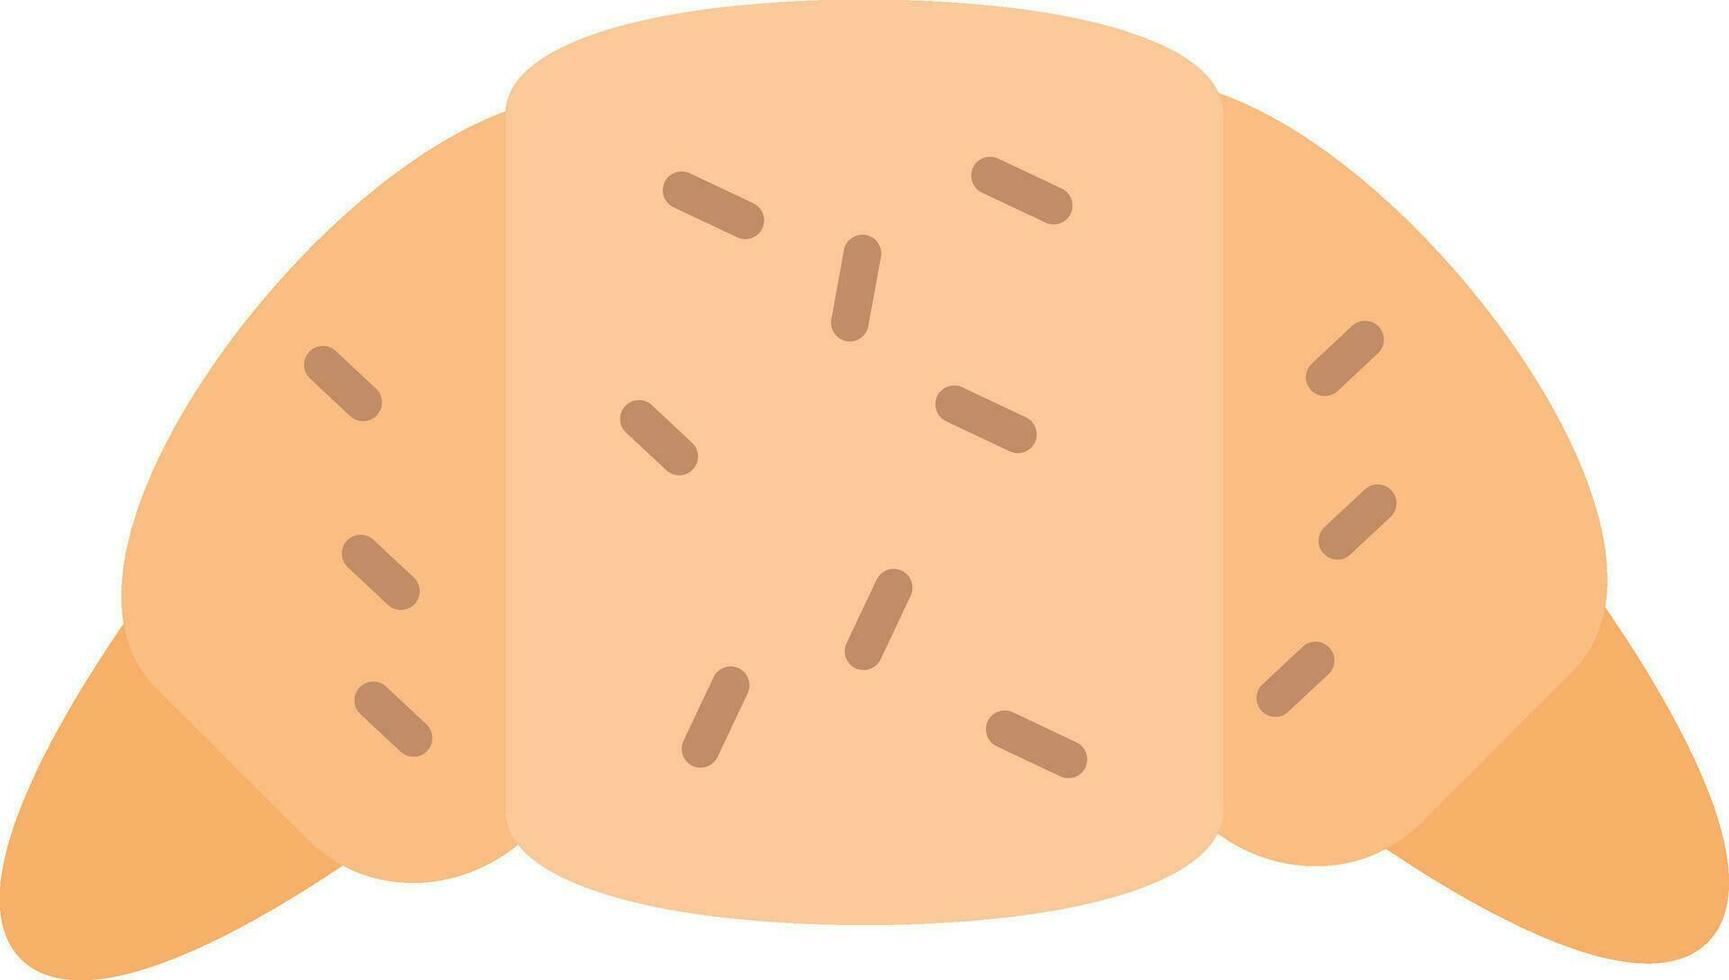 icona di vettore di croissant